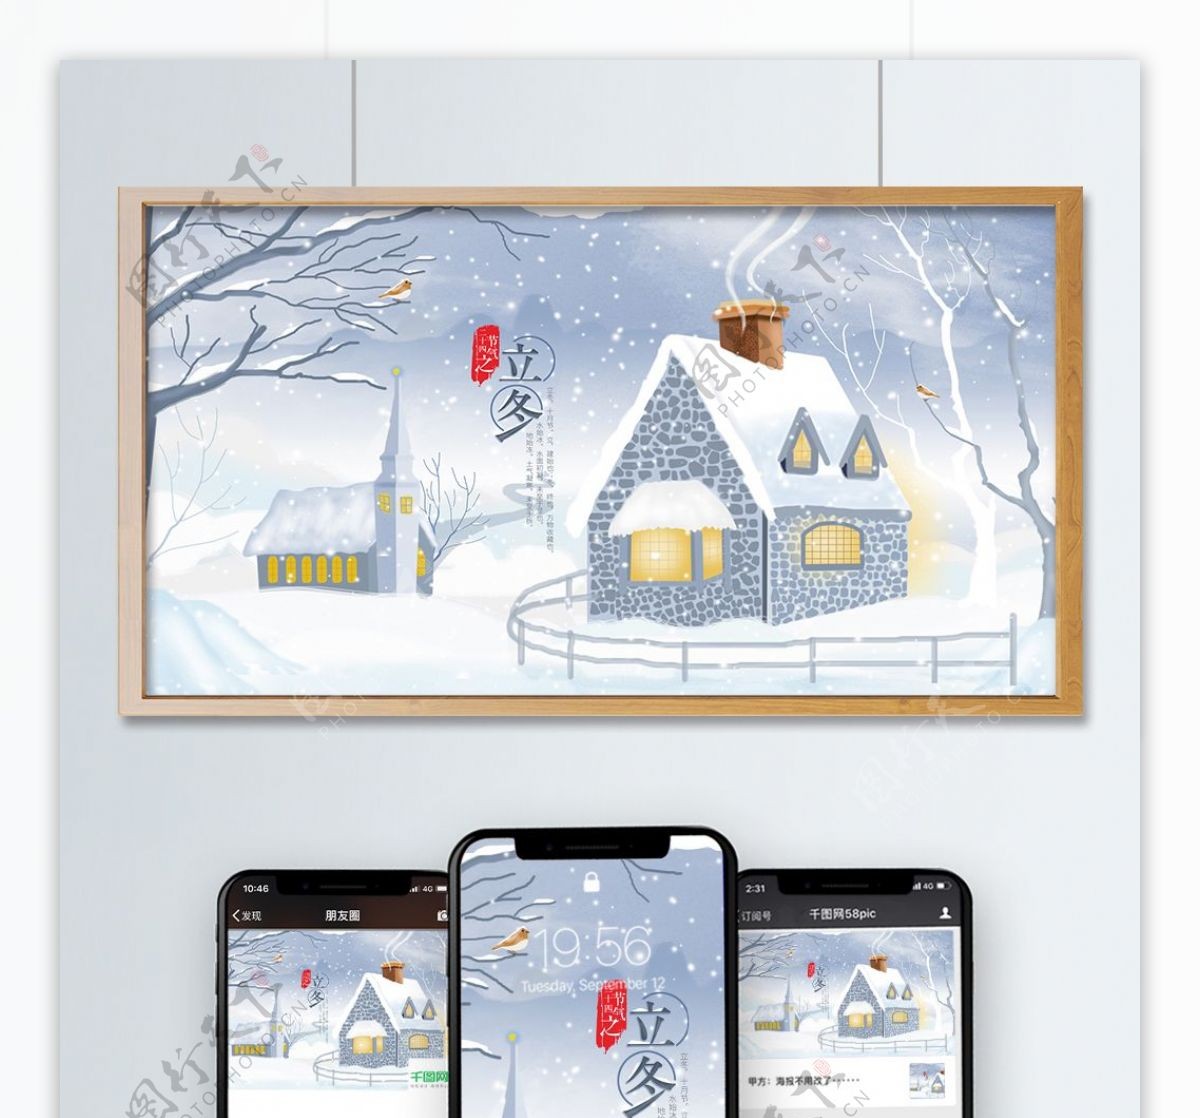 原创二十四节气立冬房屋与雪景插画